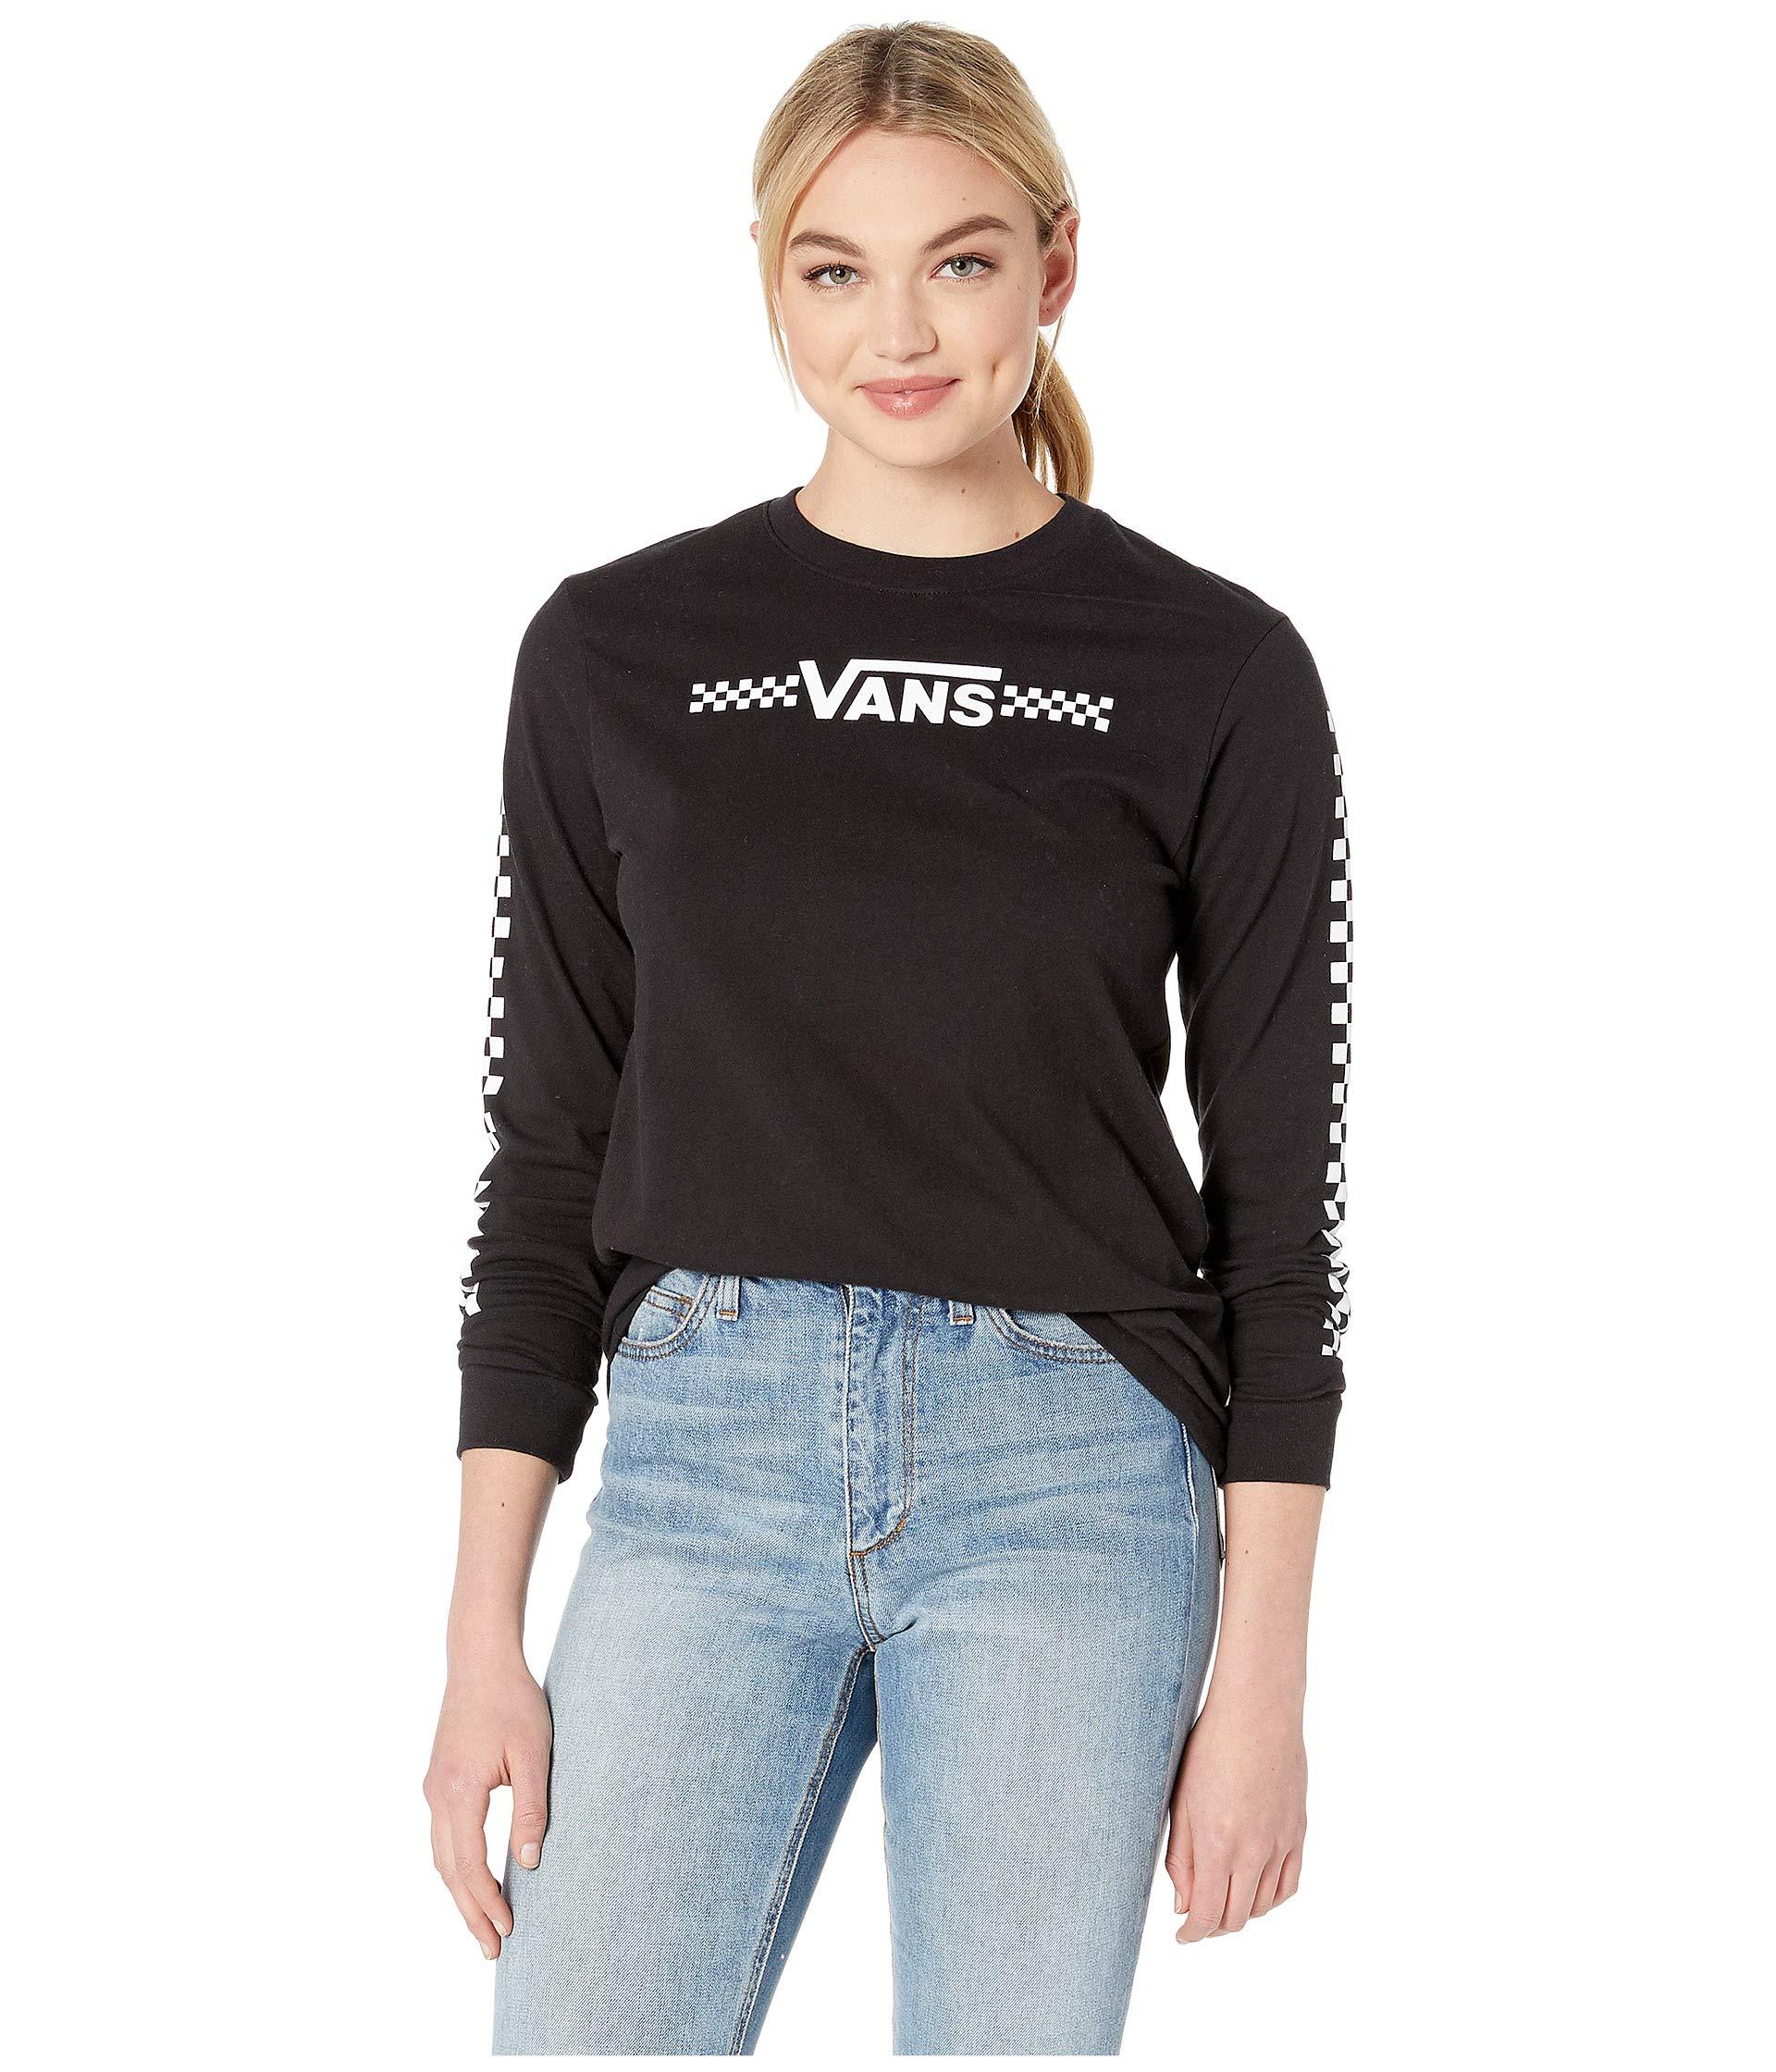 vans female clothing Online Shopping 